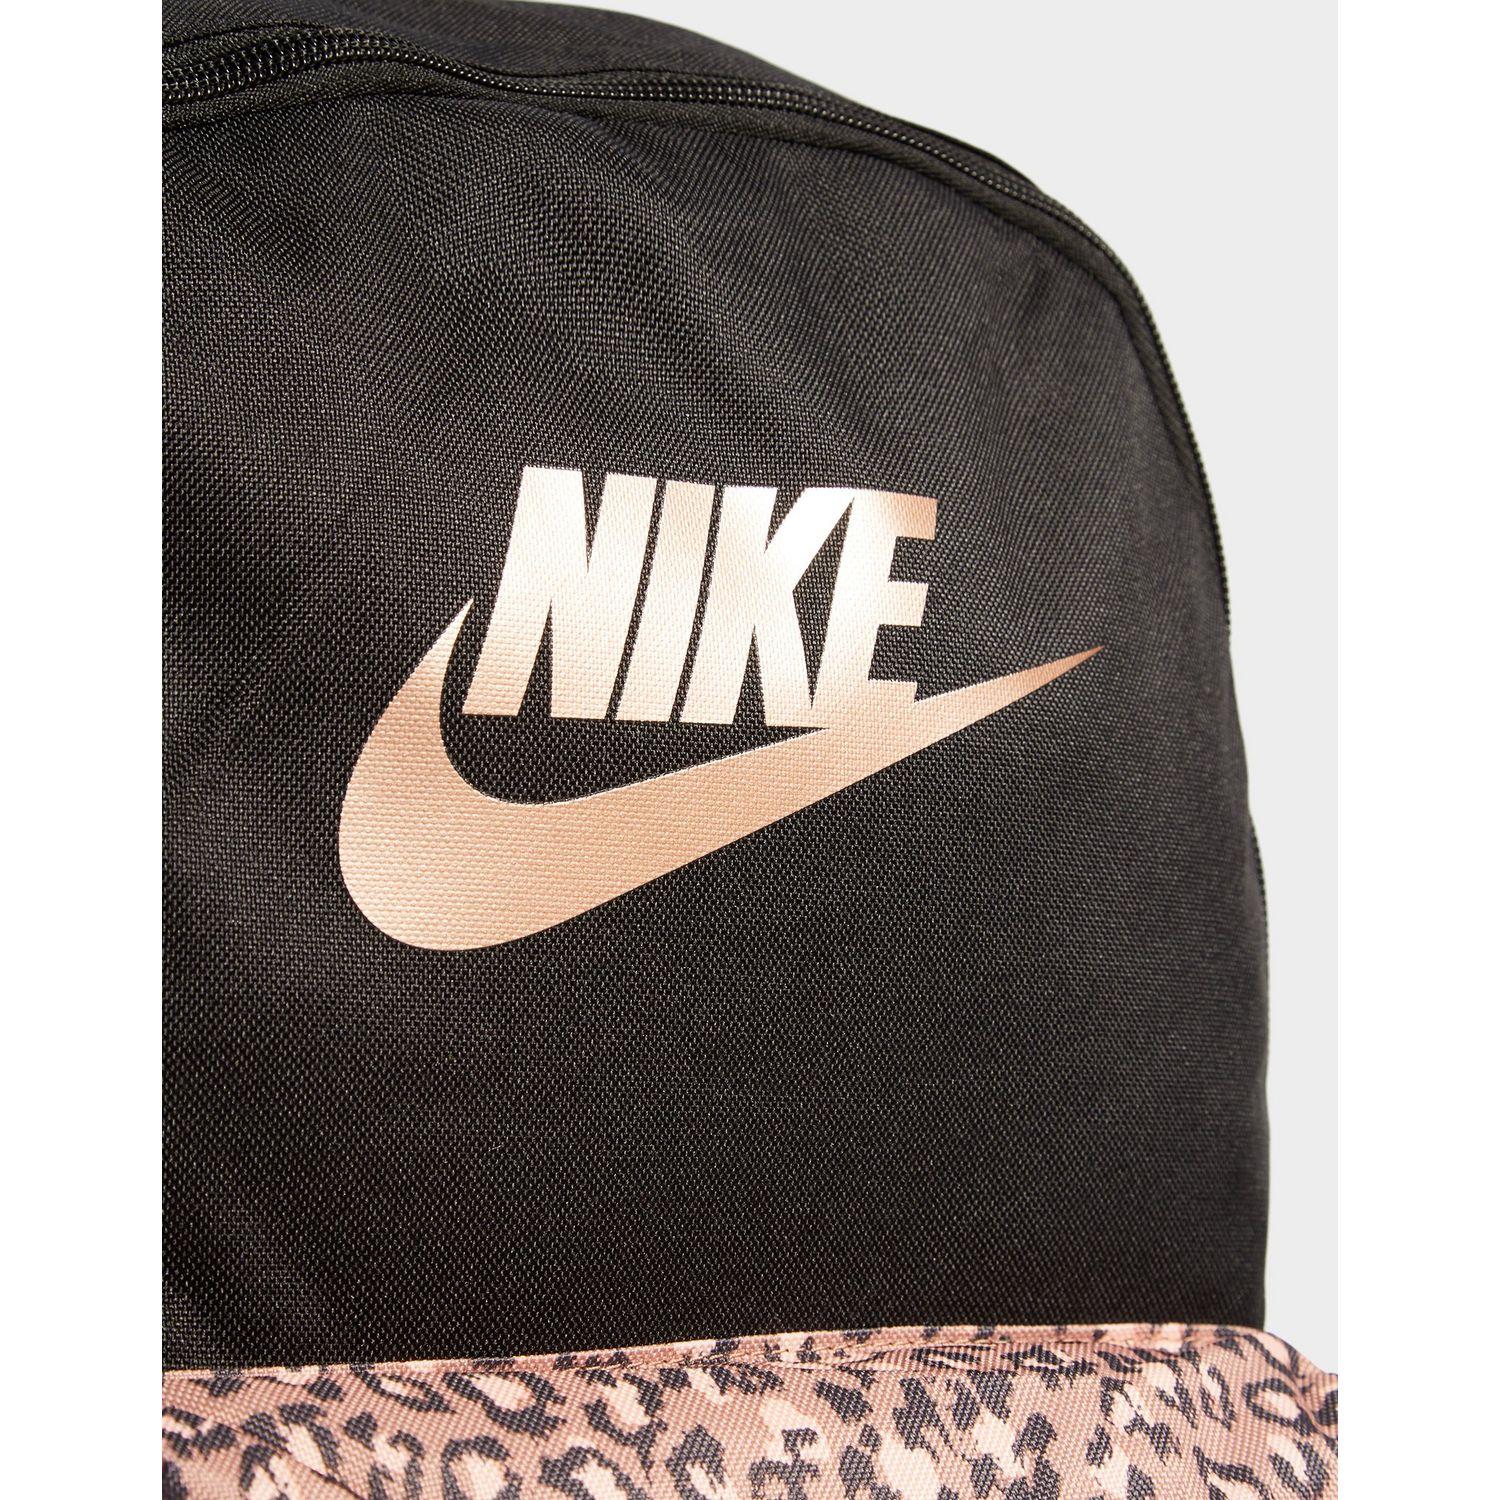 cheetah nike backpack